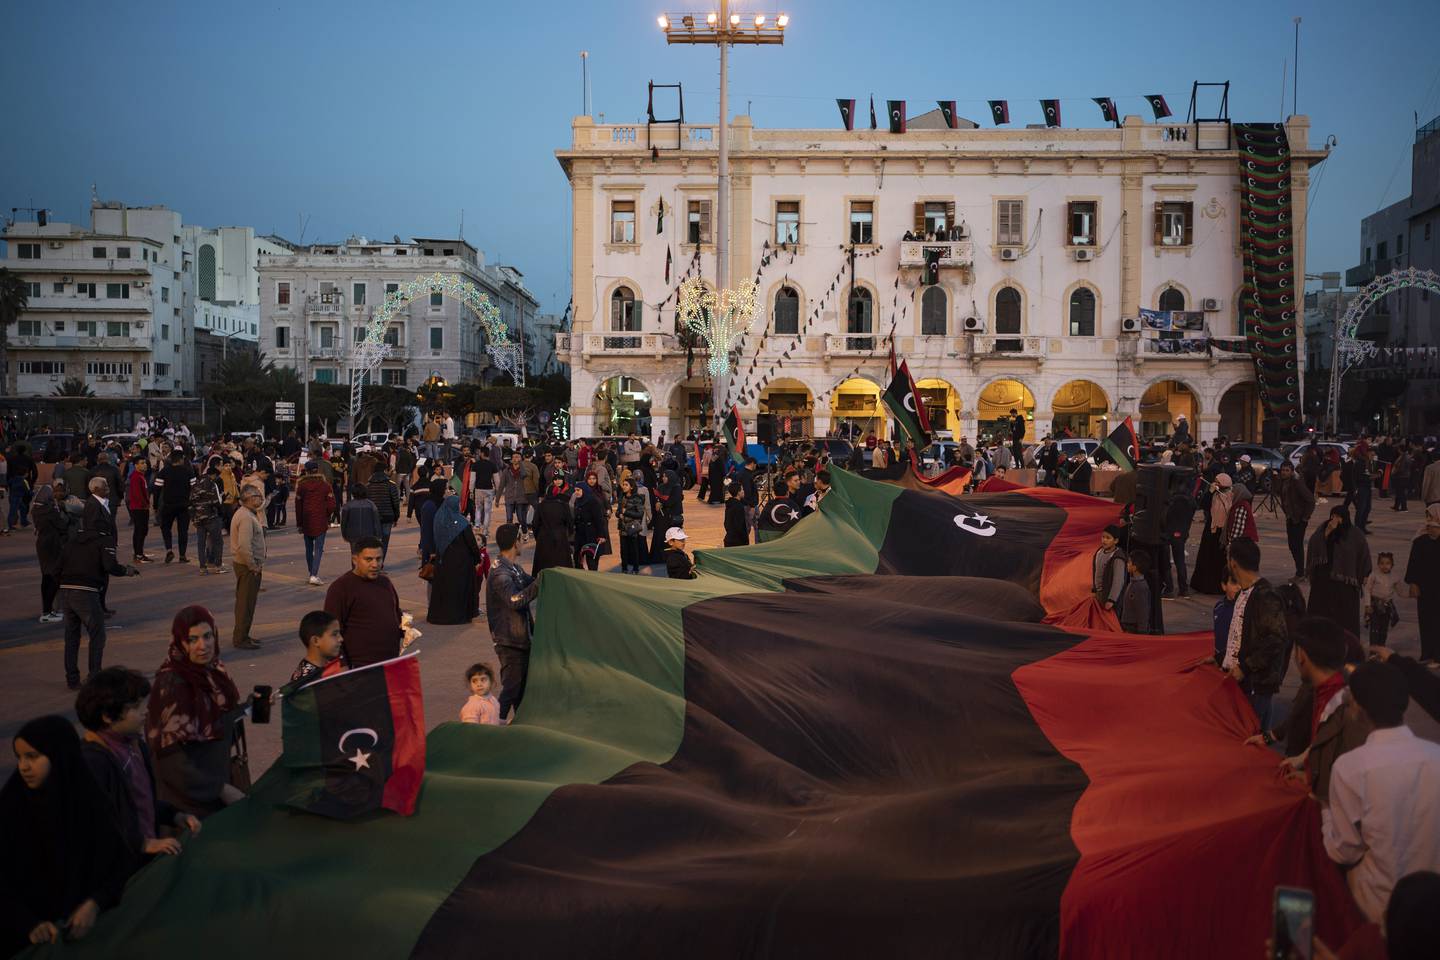 Oppmøtte hadde med seg et gigantisk libysk flagg i Tripoli da de i fjor markerte årsdagen for protestene mot regimet.